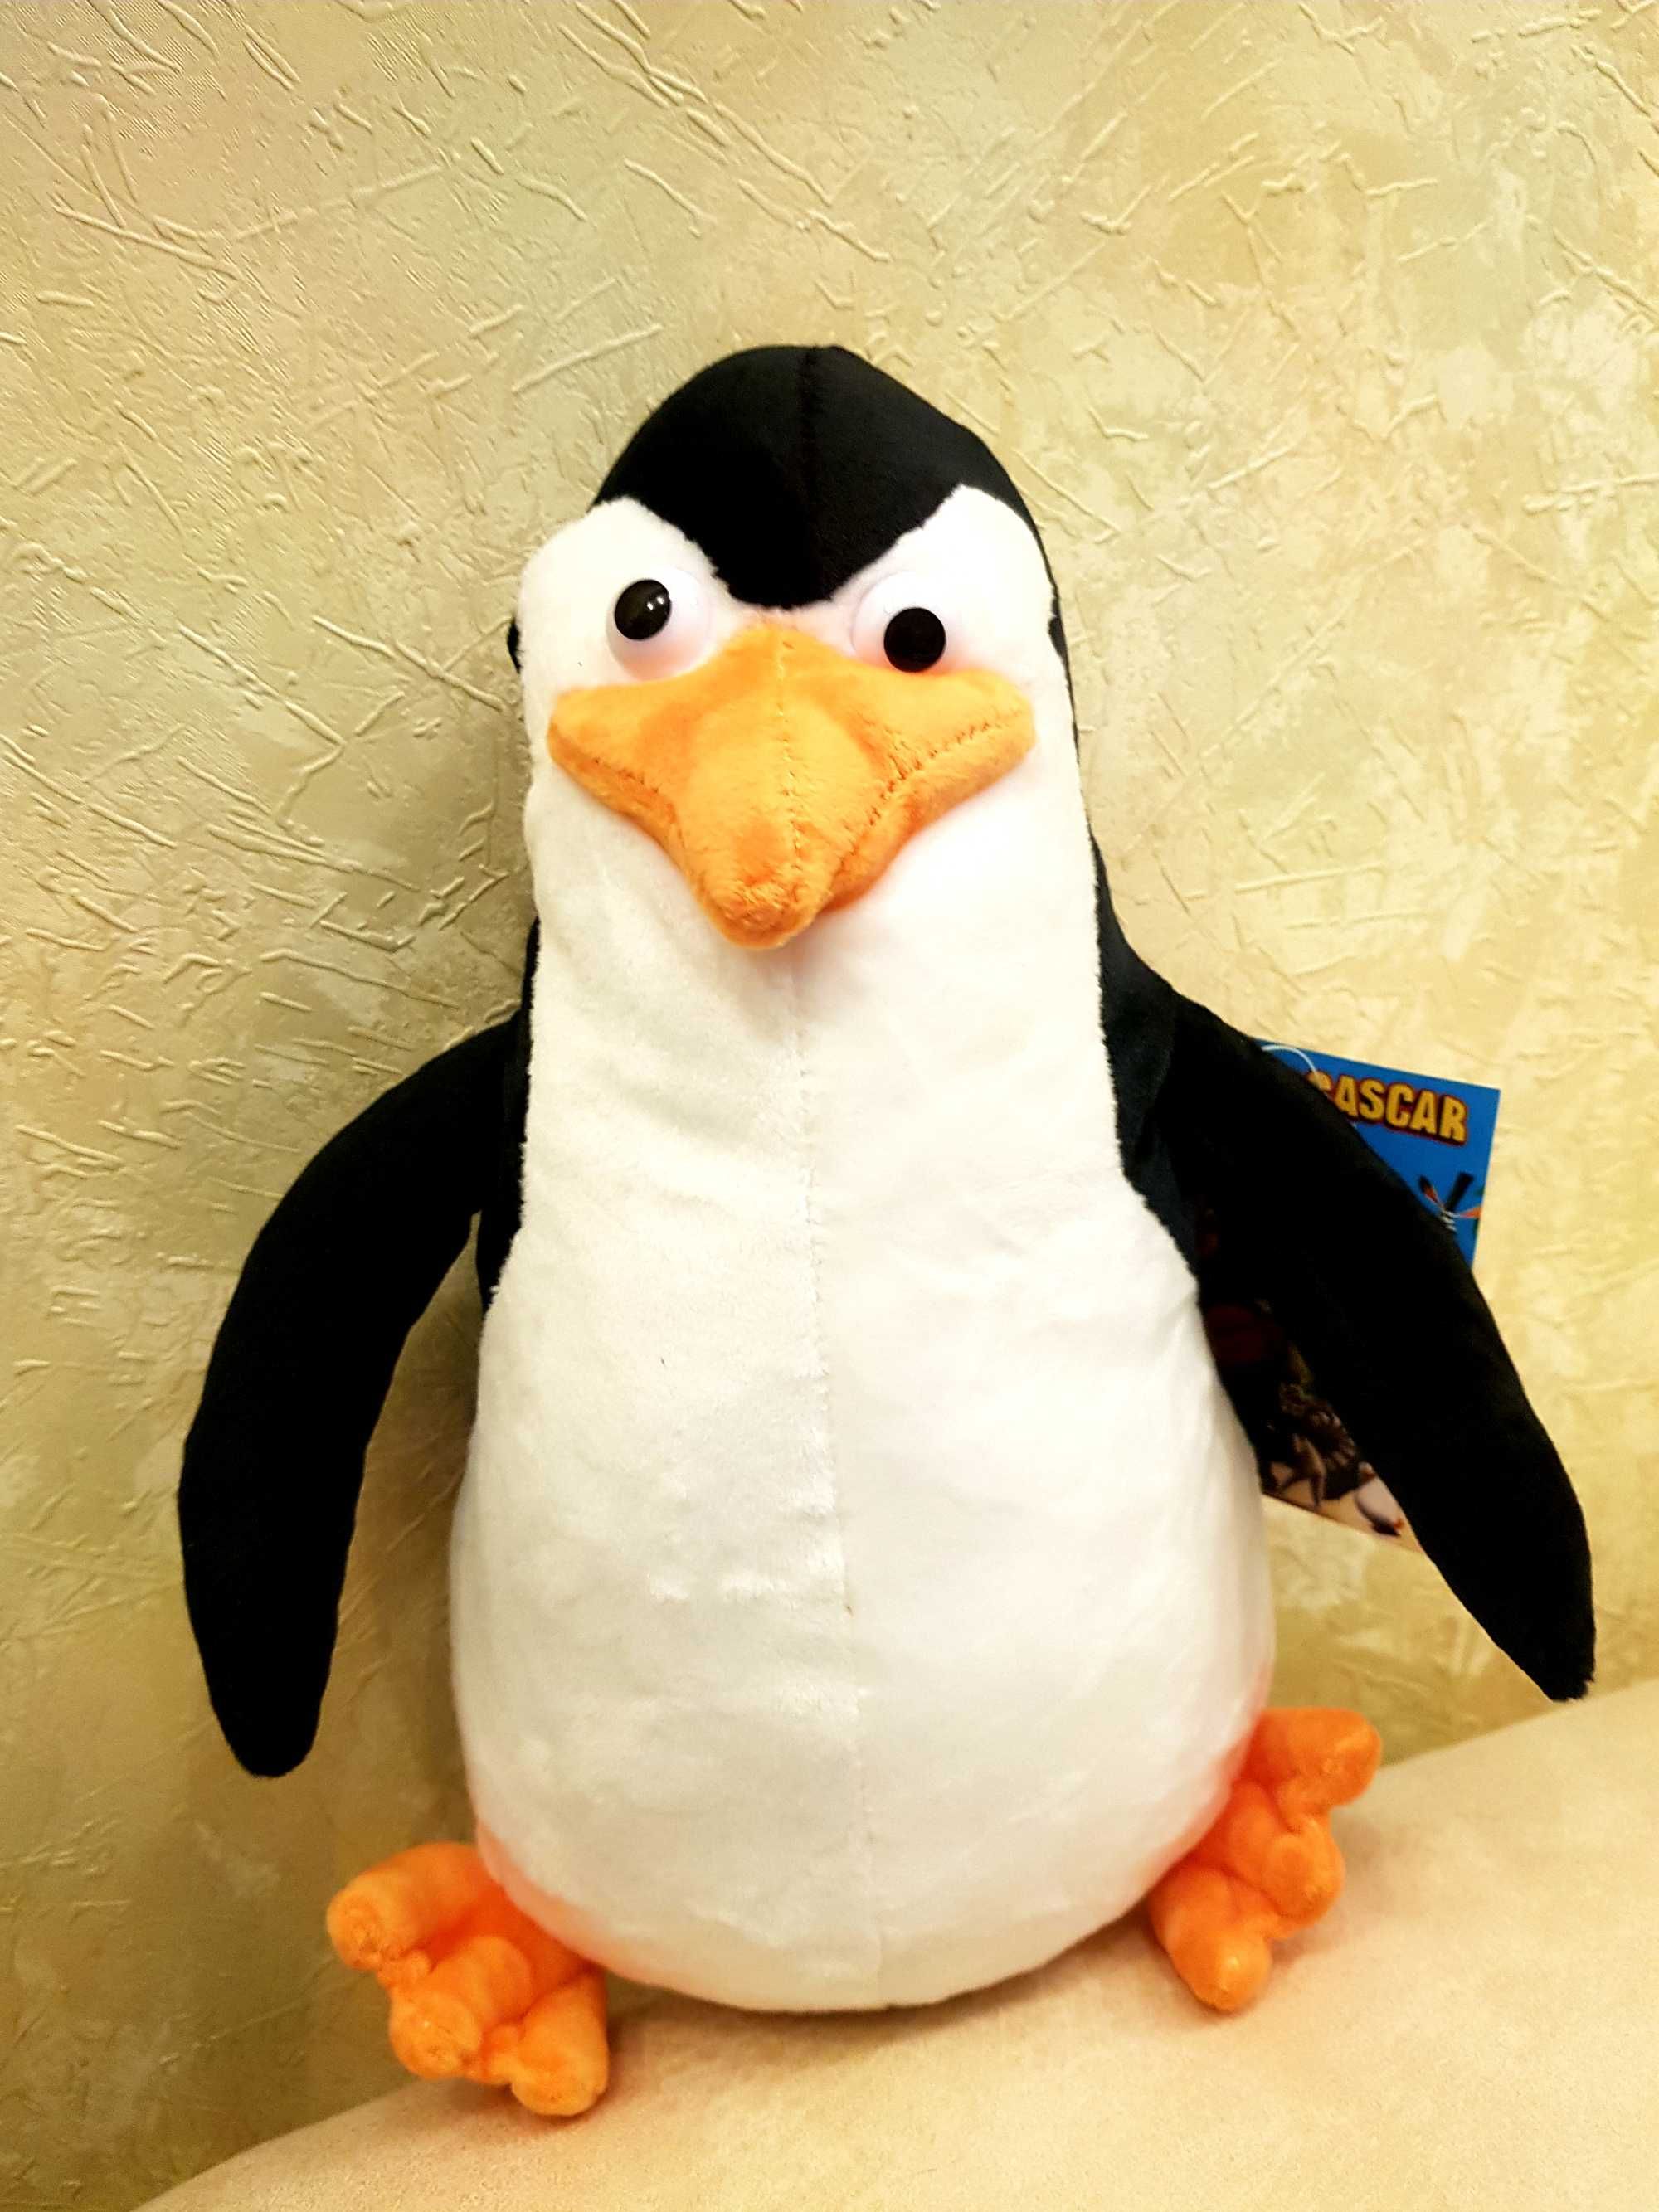 Мягкая игрушка Пингвин, герой мультфильма "Мадагаскар".